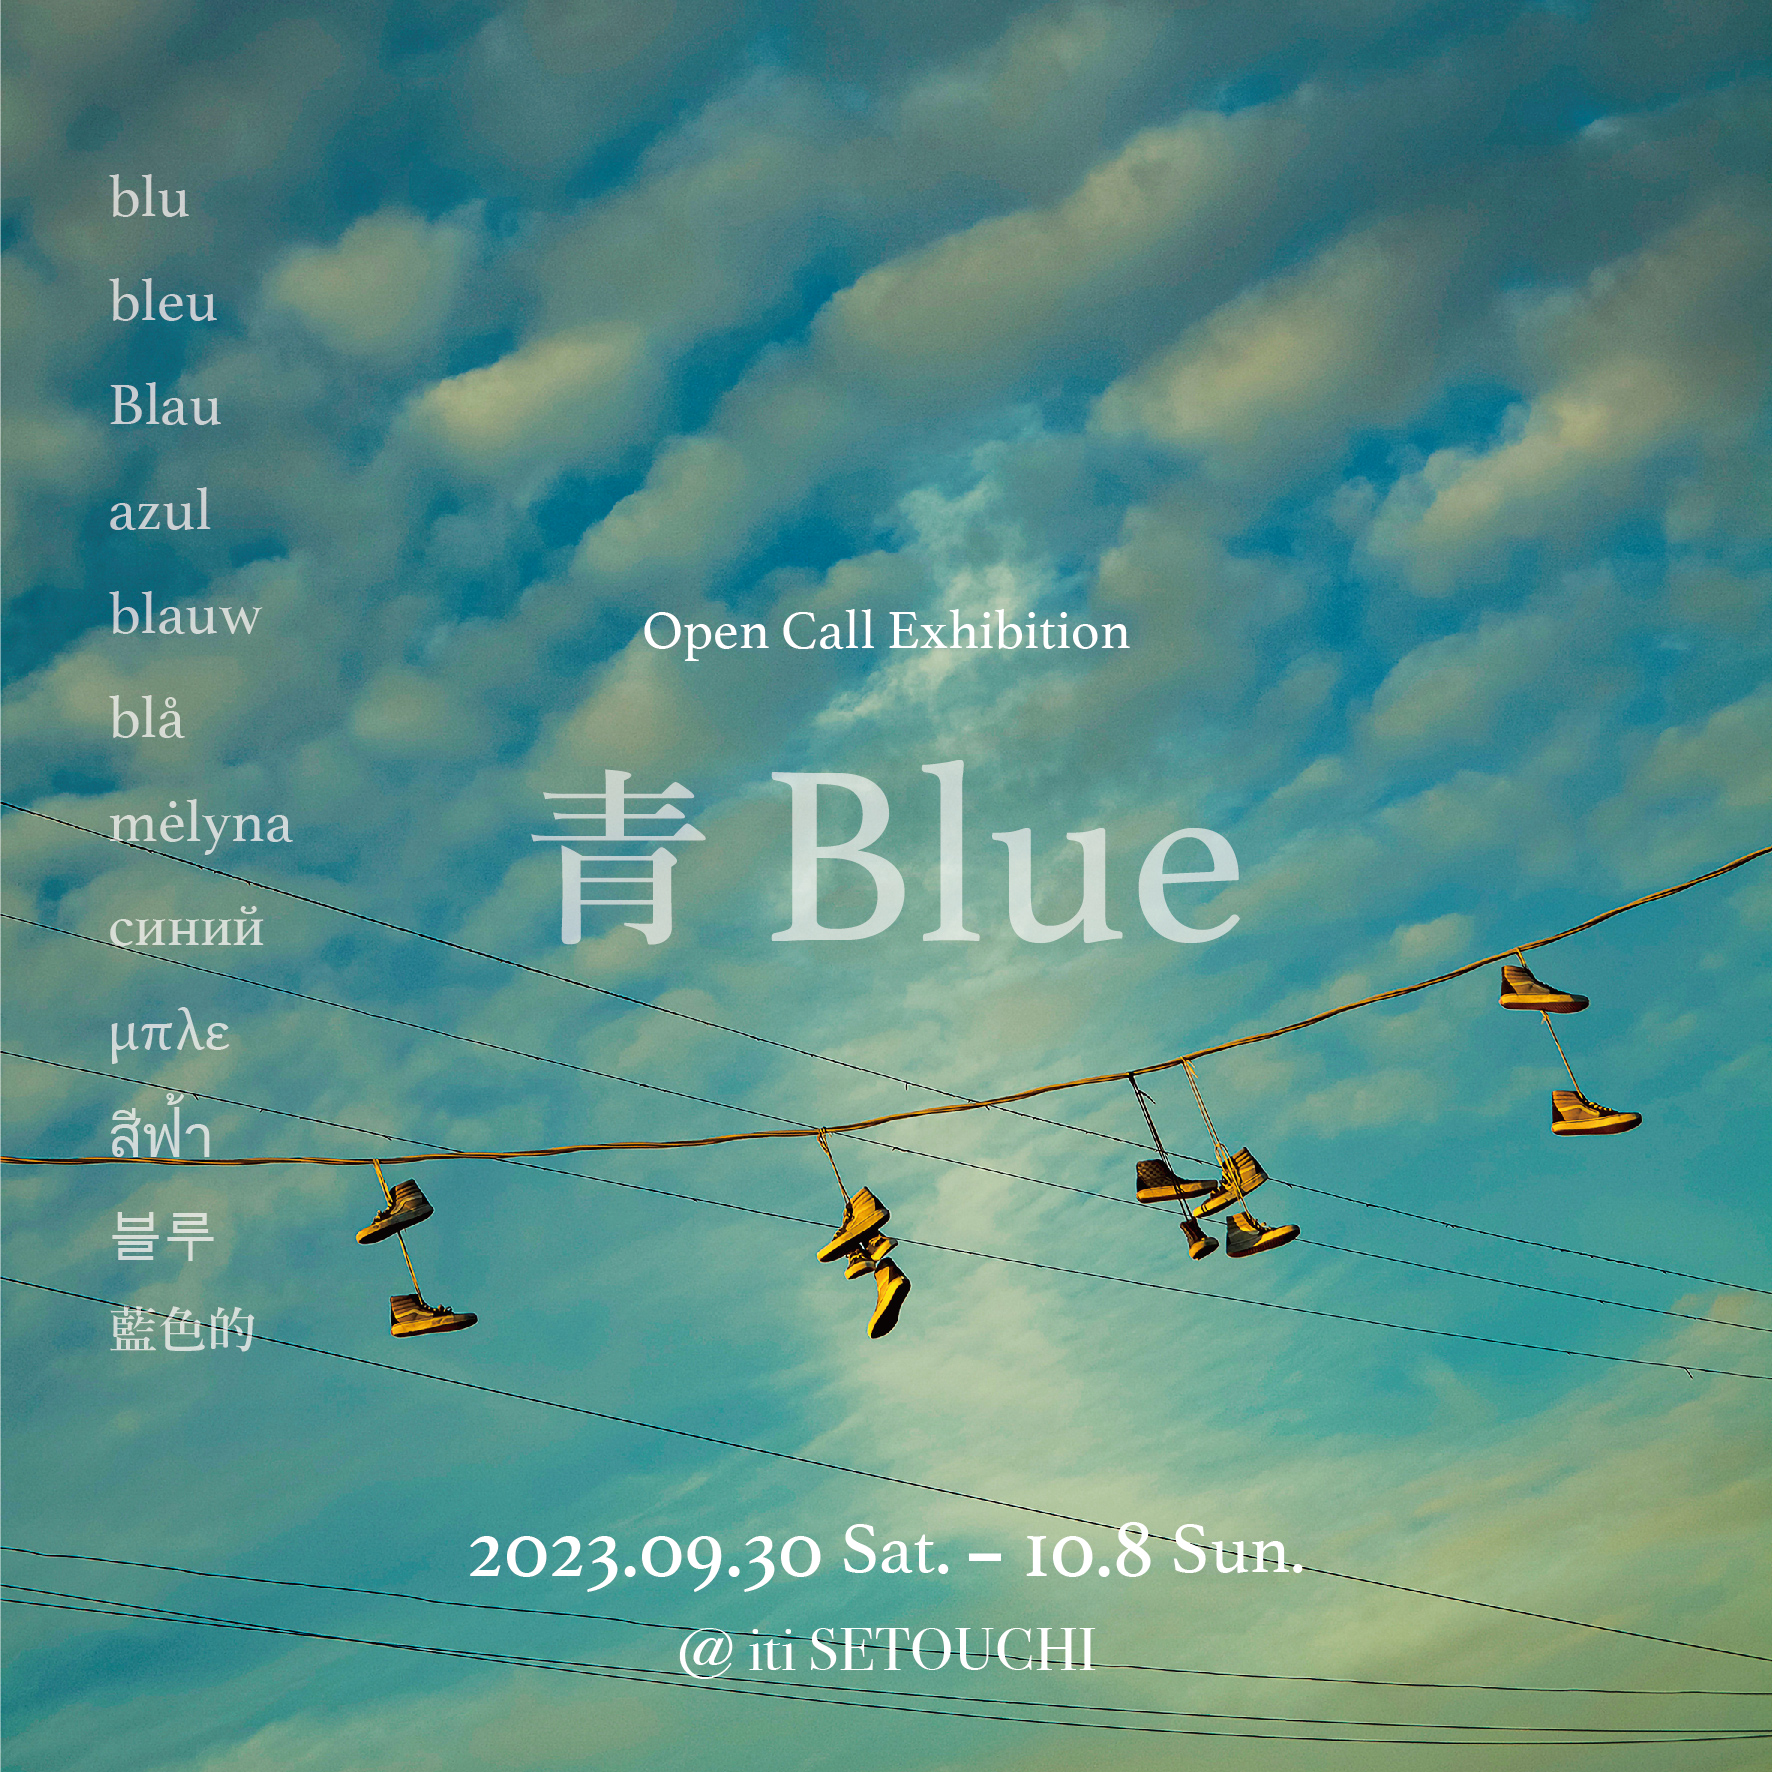 Open Call Exhibition「Blue」